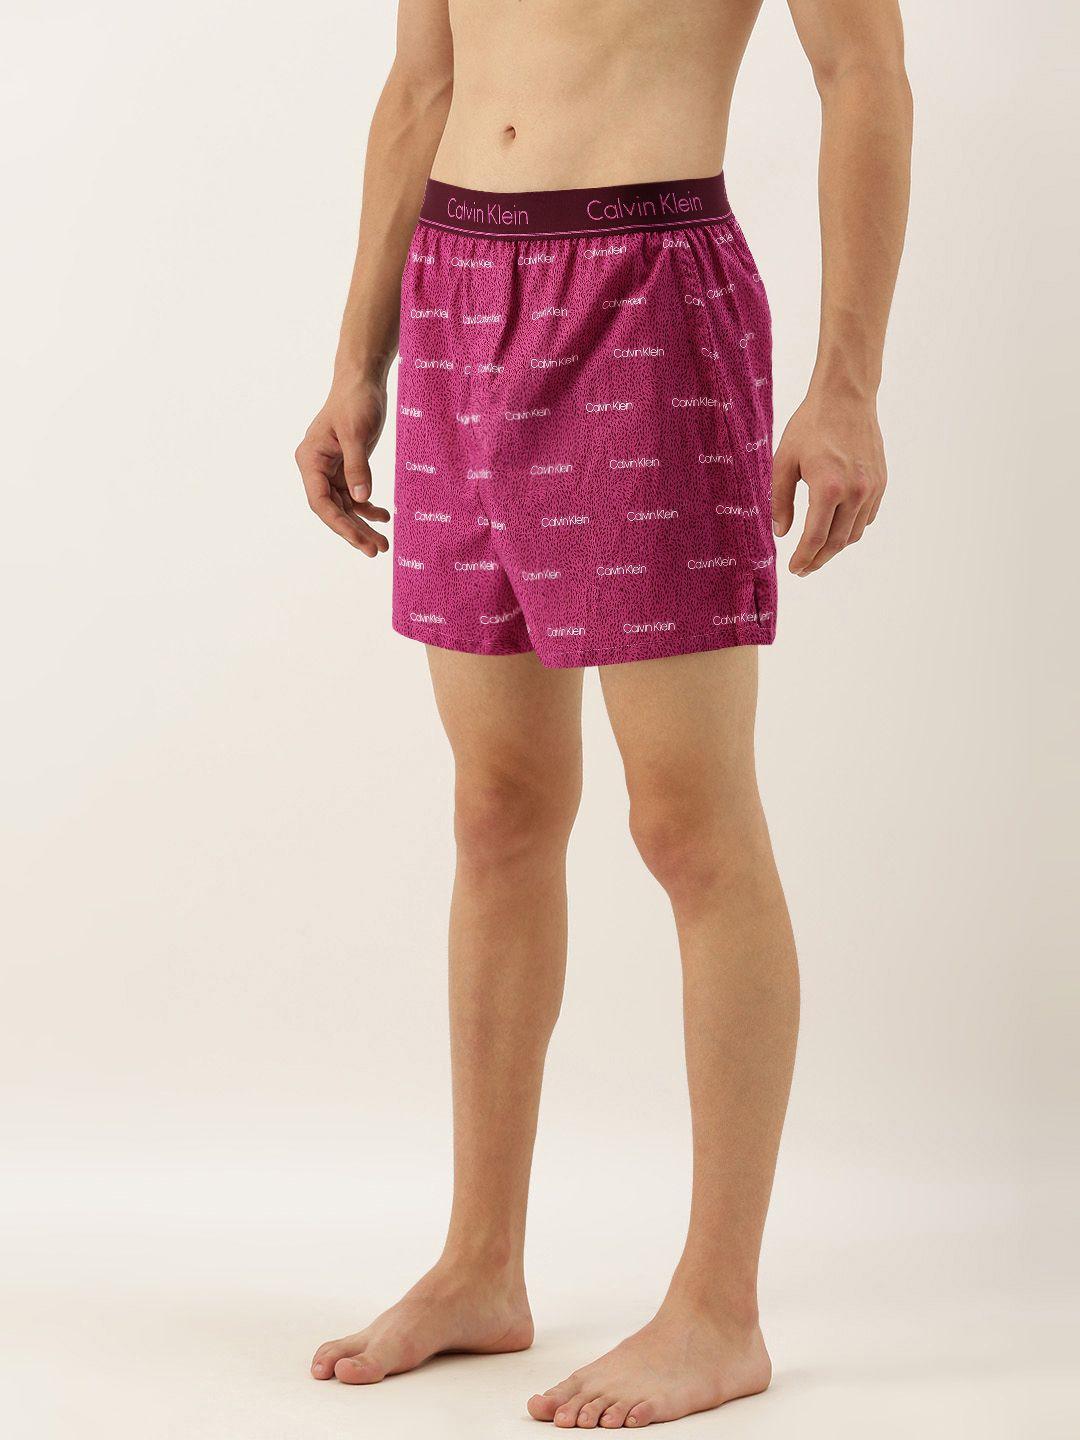 calvin-klein-underwear-men-pink-&-maroon-printed-pure-cotton-boxers-nb1524bm2